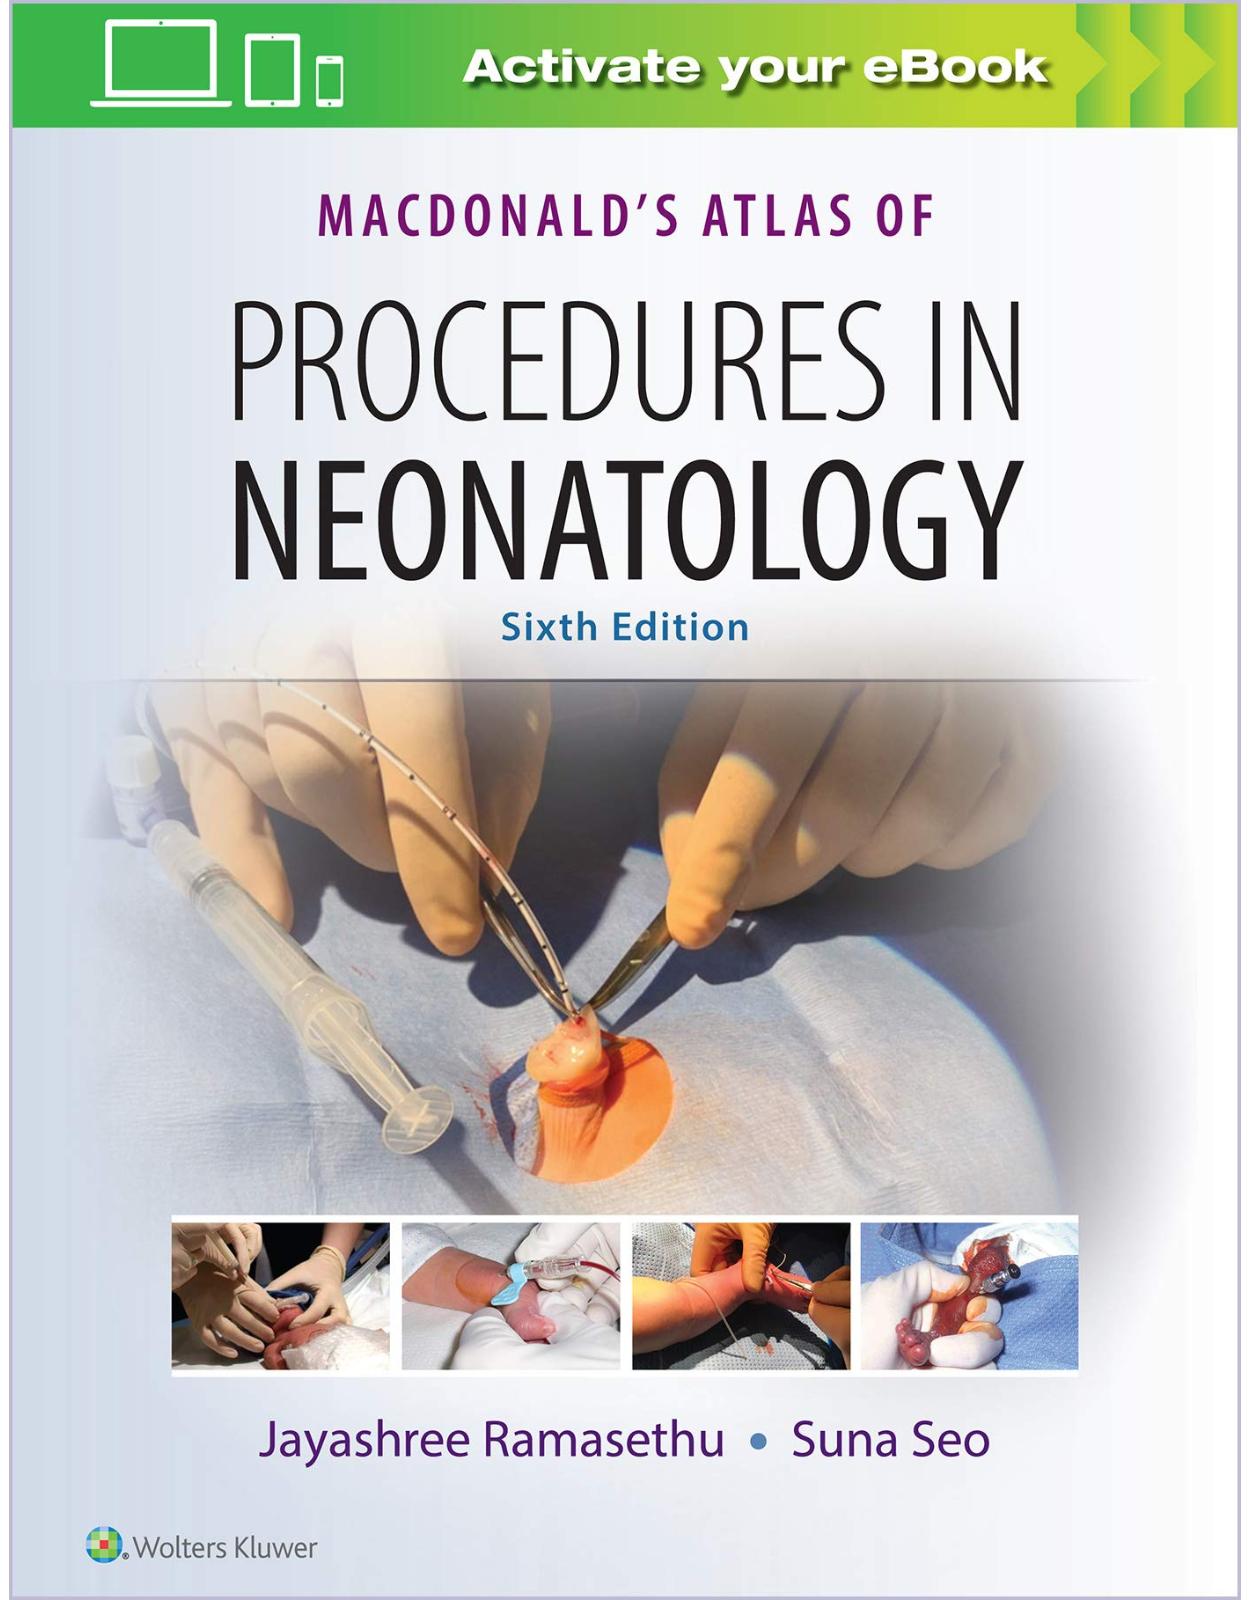 MacDonald’s Atlas of Procedures in Neonatology